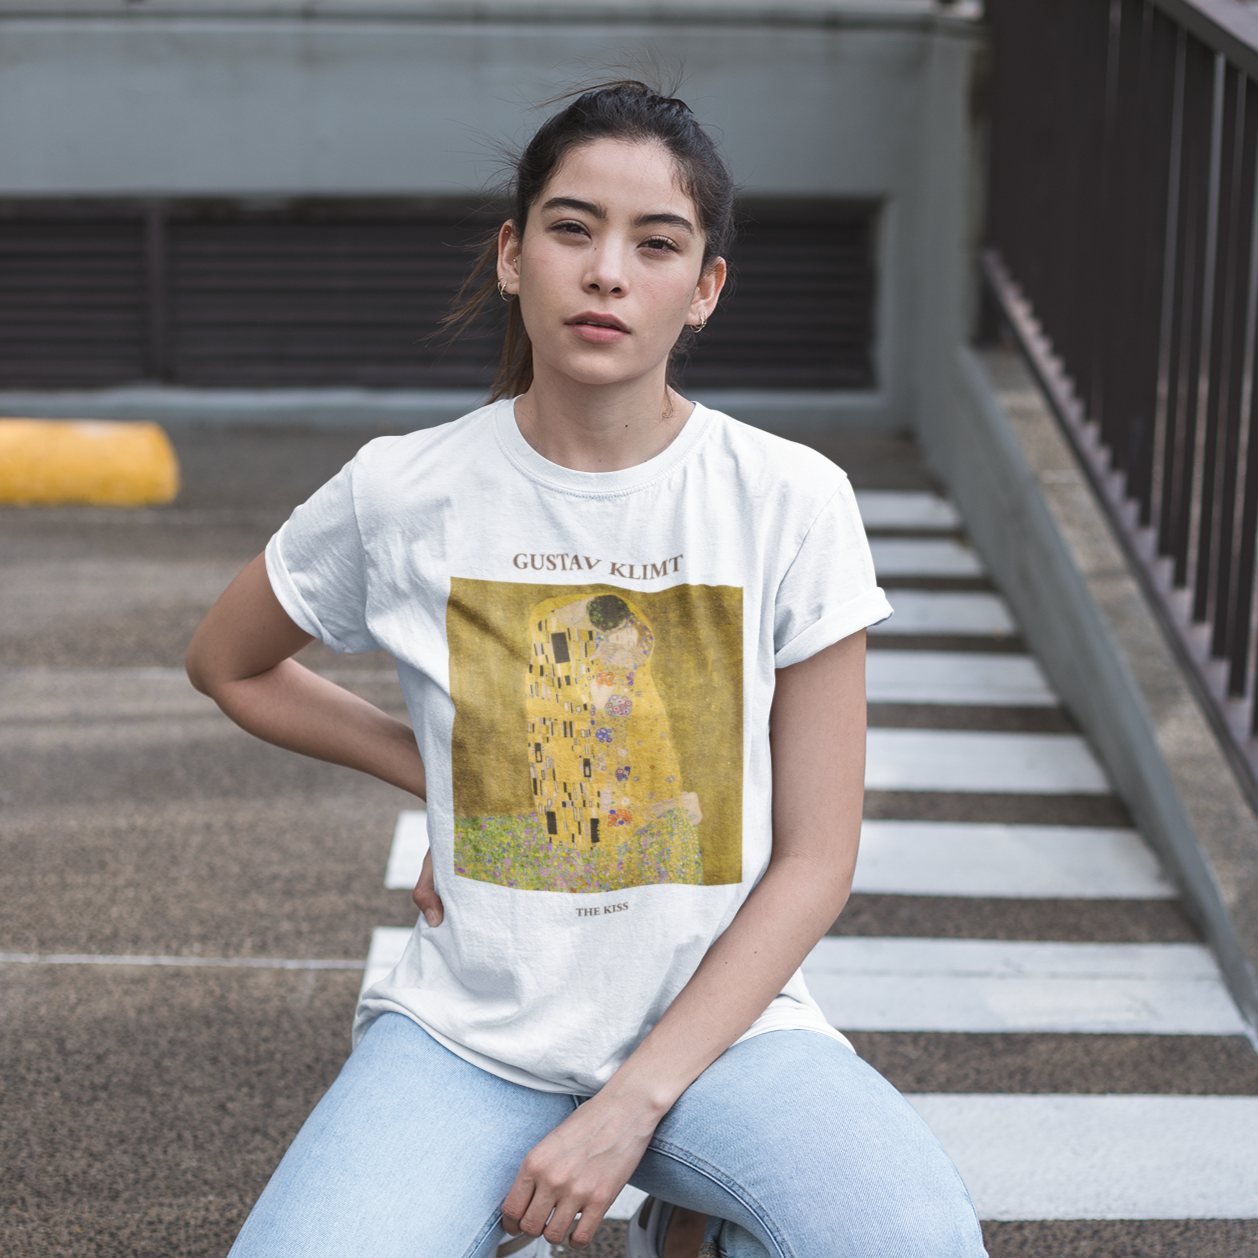 Gustav Klimt The T-shirt – Galartsy